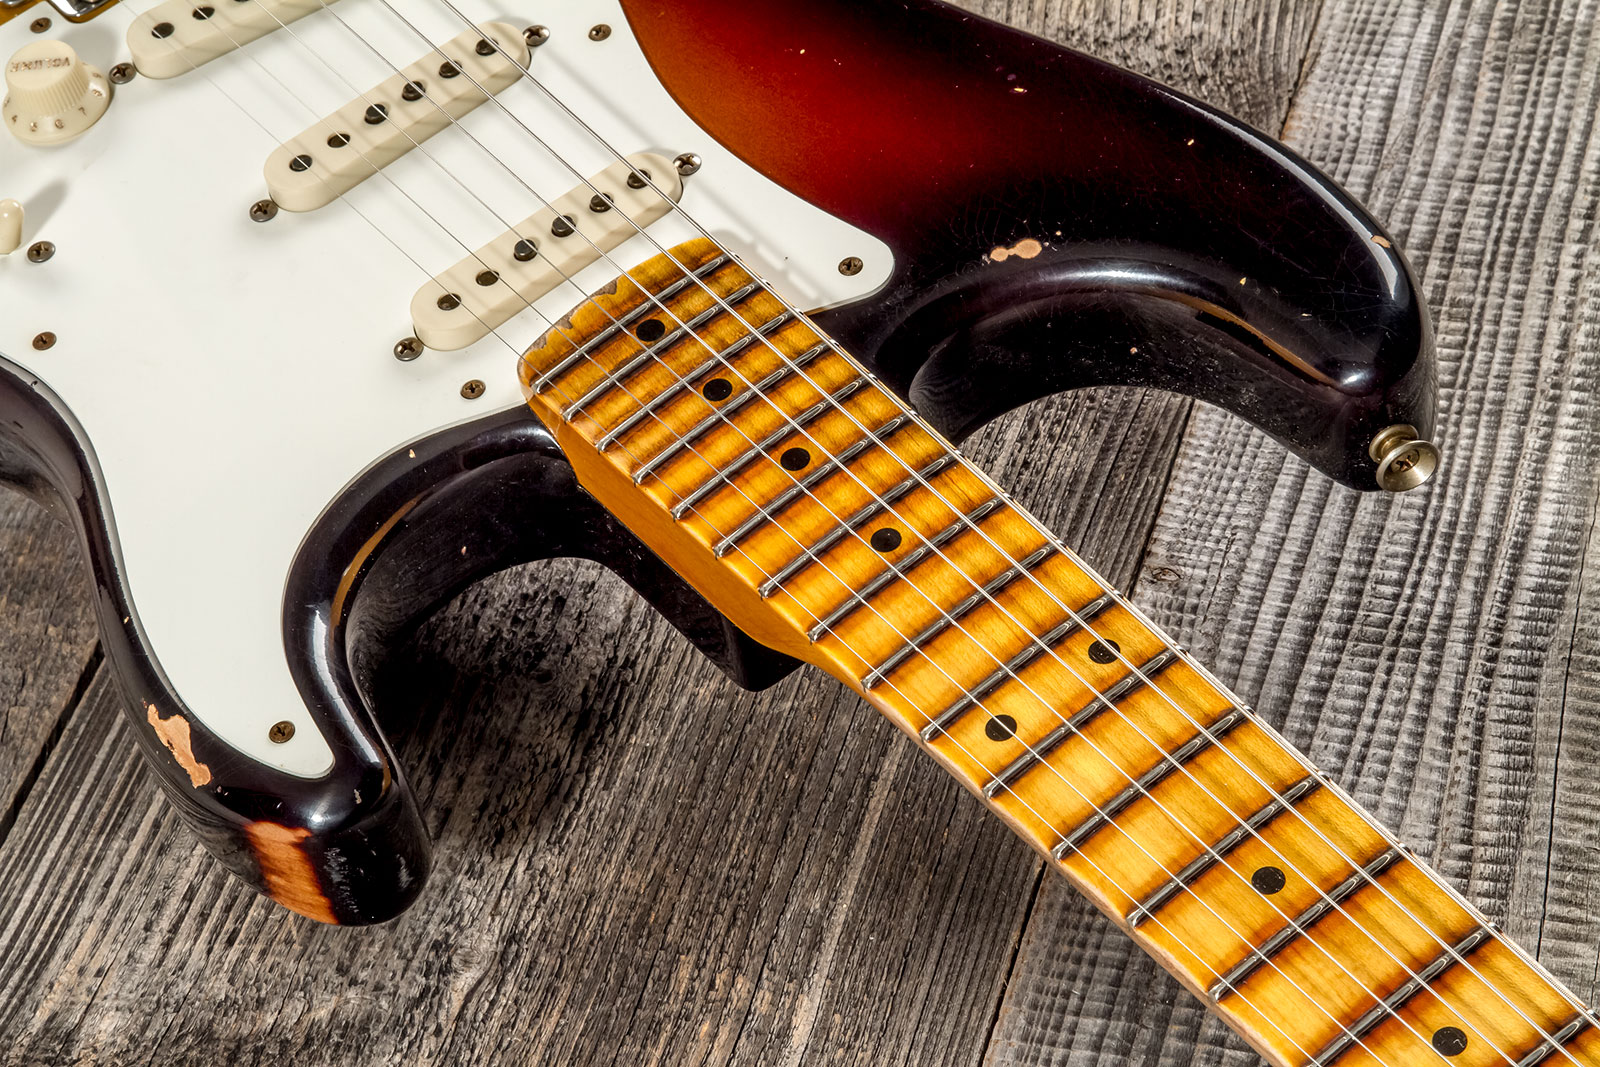 Fender Custom Shop Strat 1957 3s Trem Mn #cz575421 - Relic 2-color Sunburst - Str shape electric guitar - Variation 4